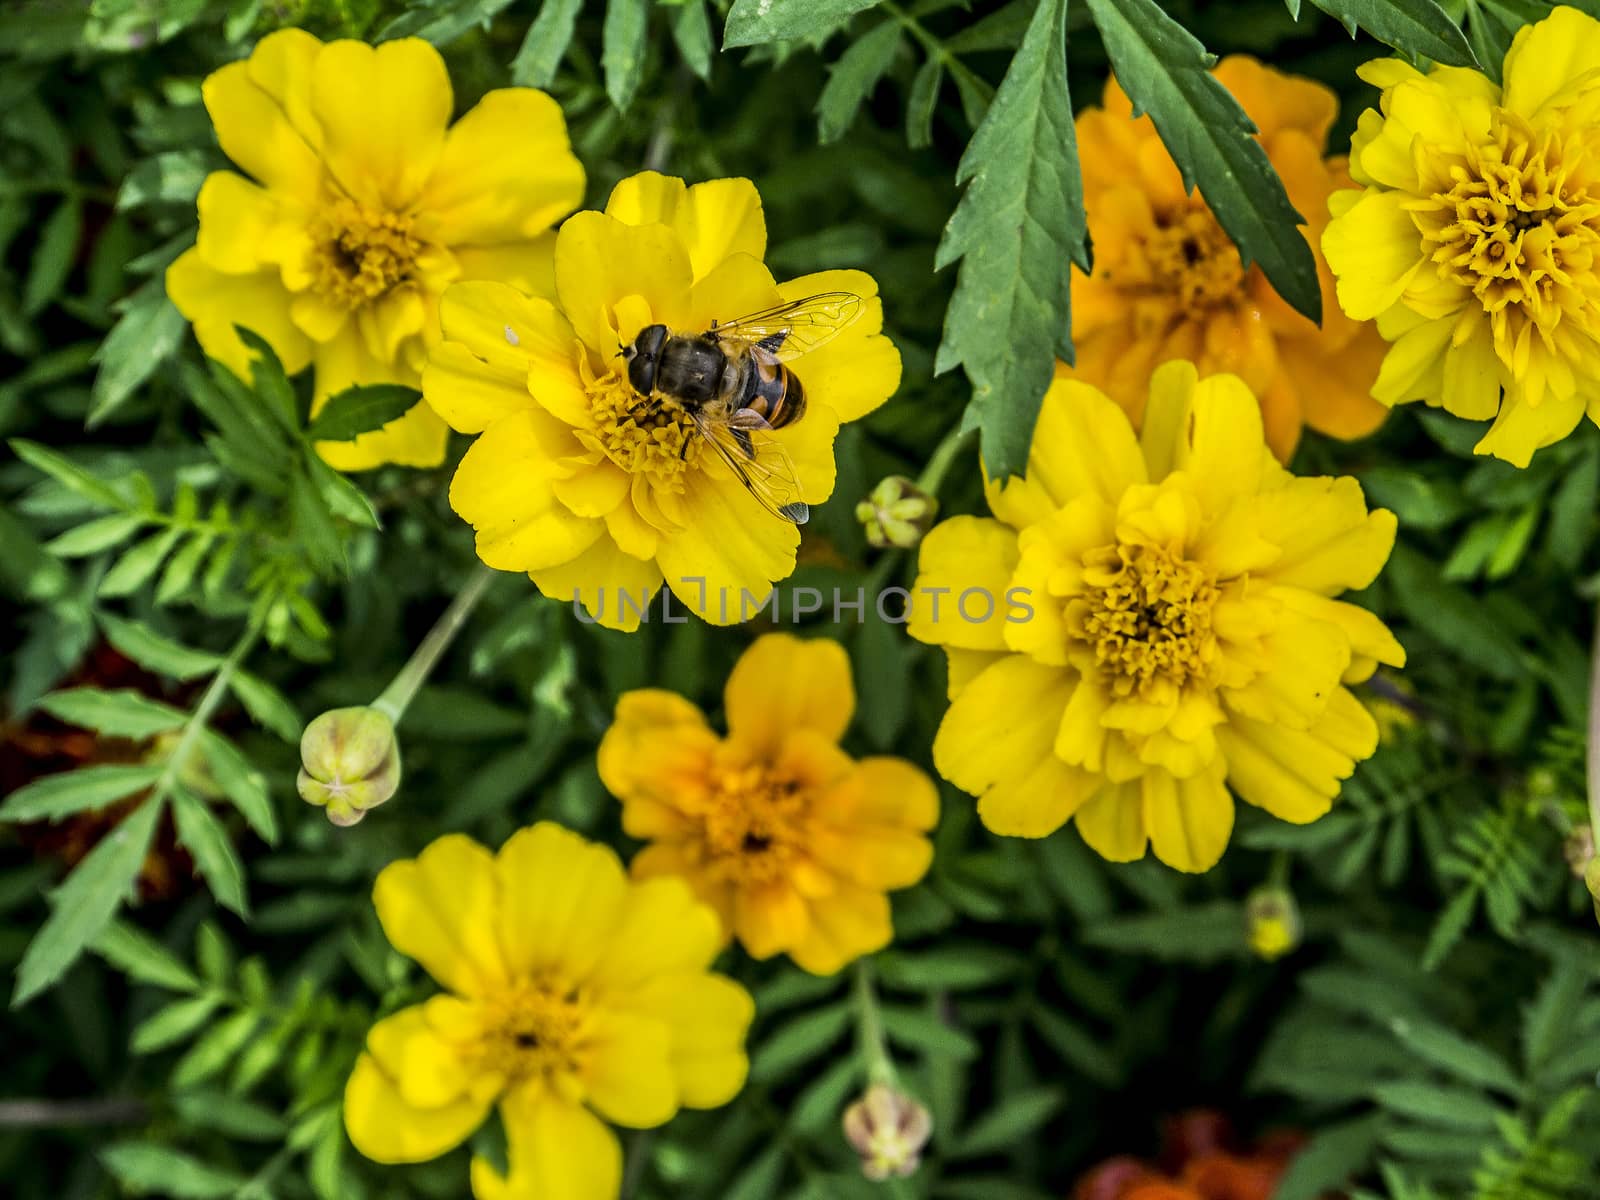 Bumble-bee on marigold.







Bumble-bee on